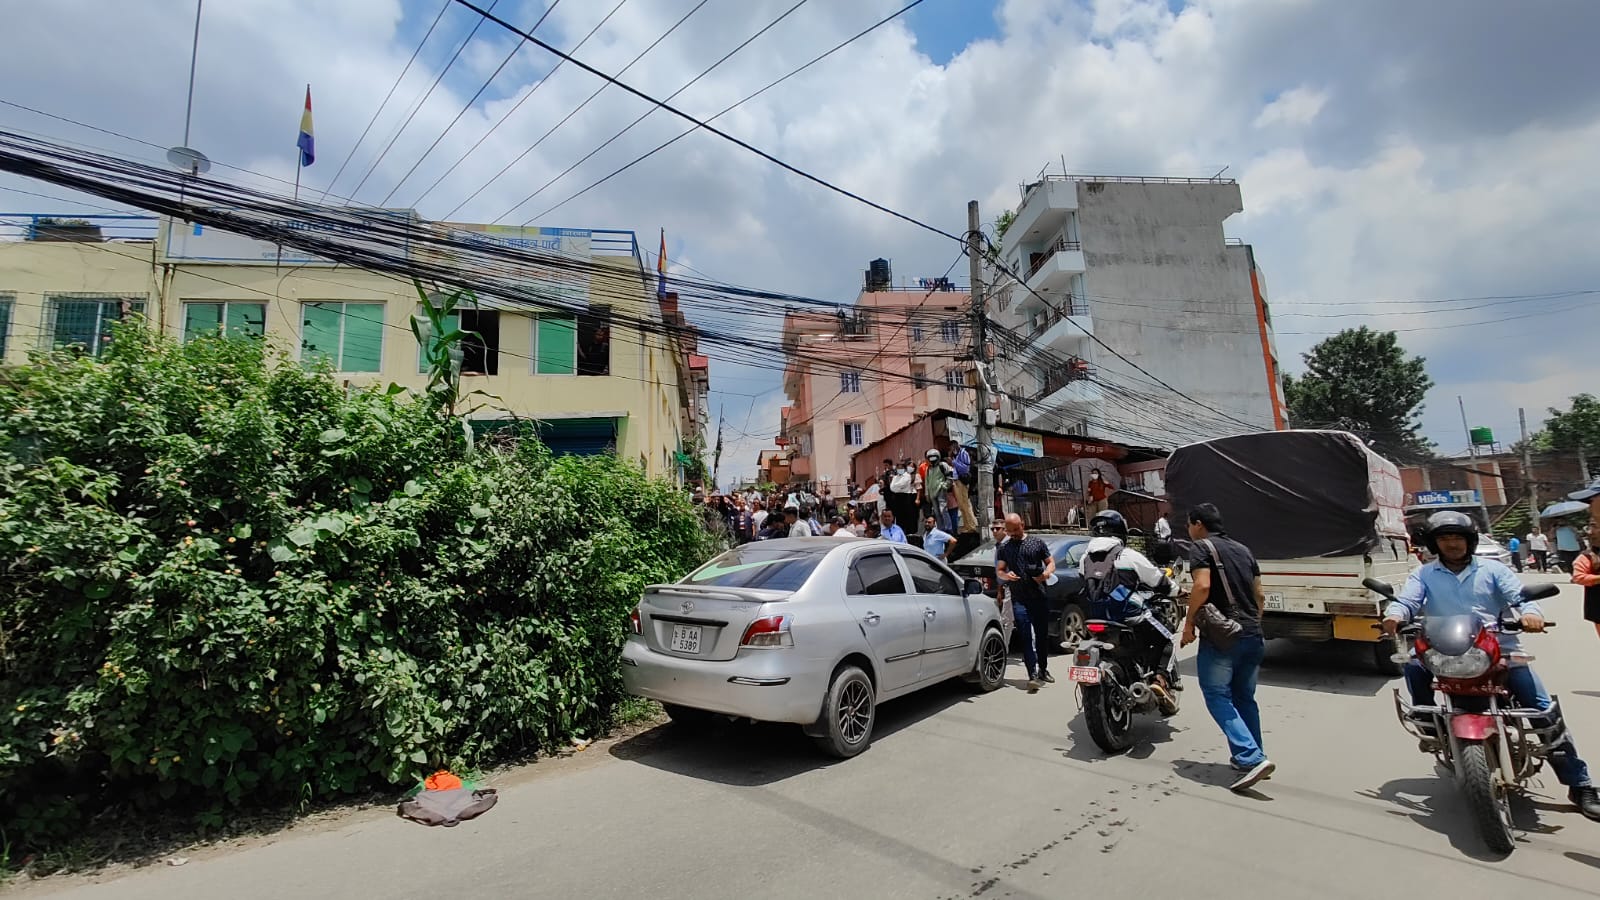 काठमाडौं महानगरको डोजर रोक्न राप्रपाका नेताहरुले सडकमा गाडी तेस्र्याए 